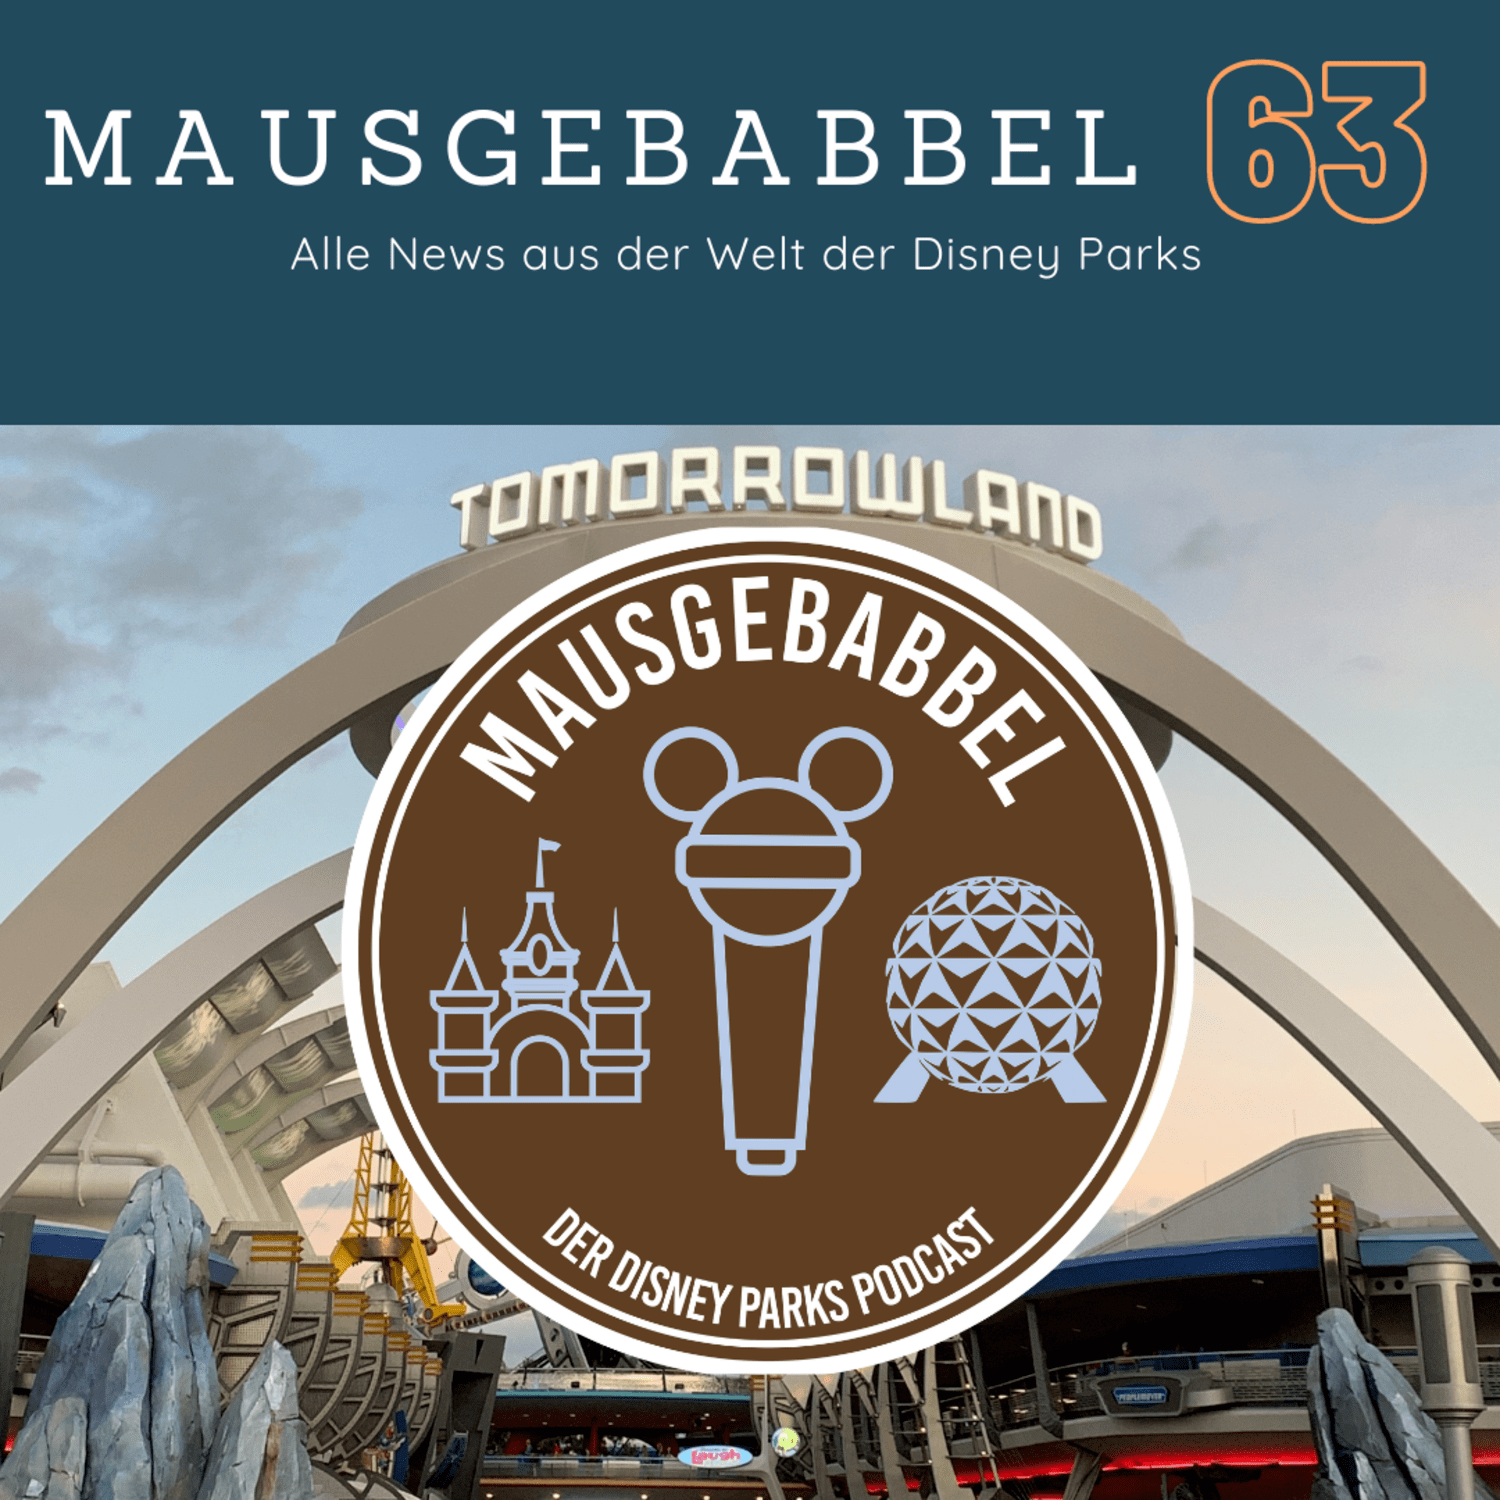 Mausgebabbel 63 - Die spannendsten Neuigkeiten aus Disneyland Paris und Co. 4